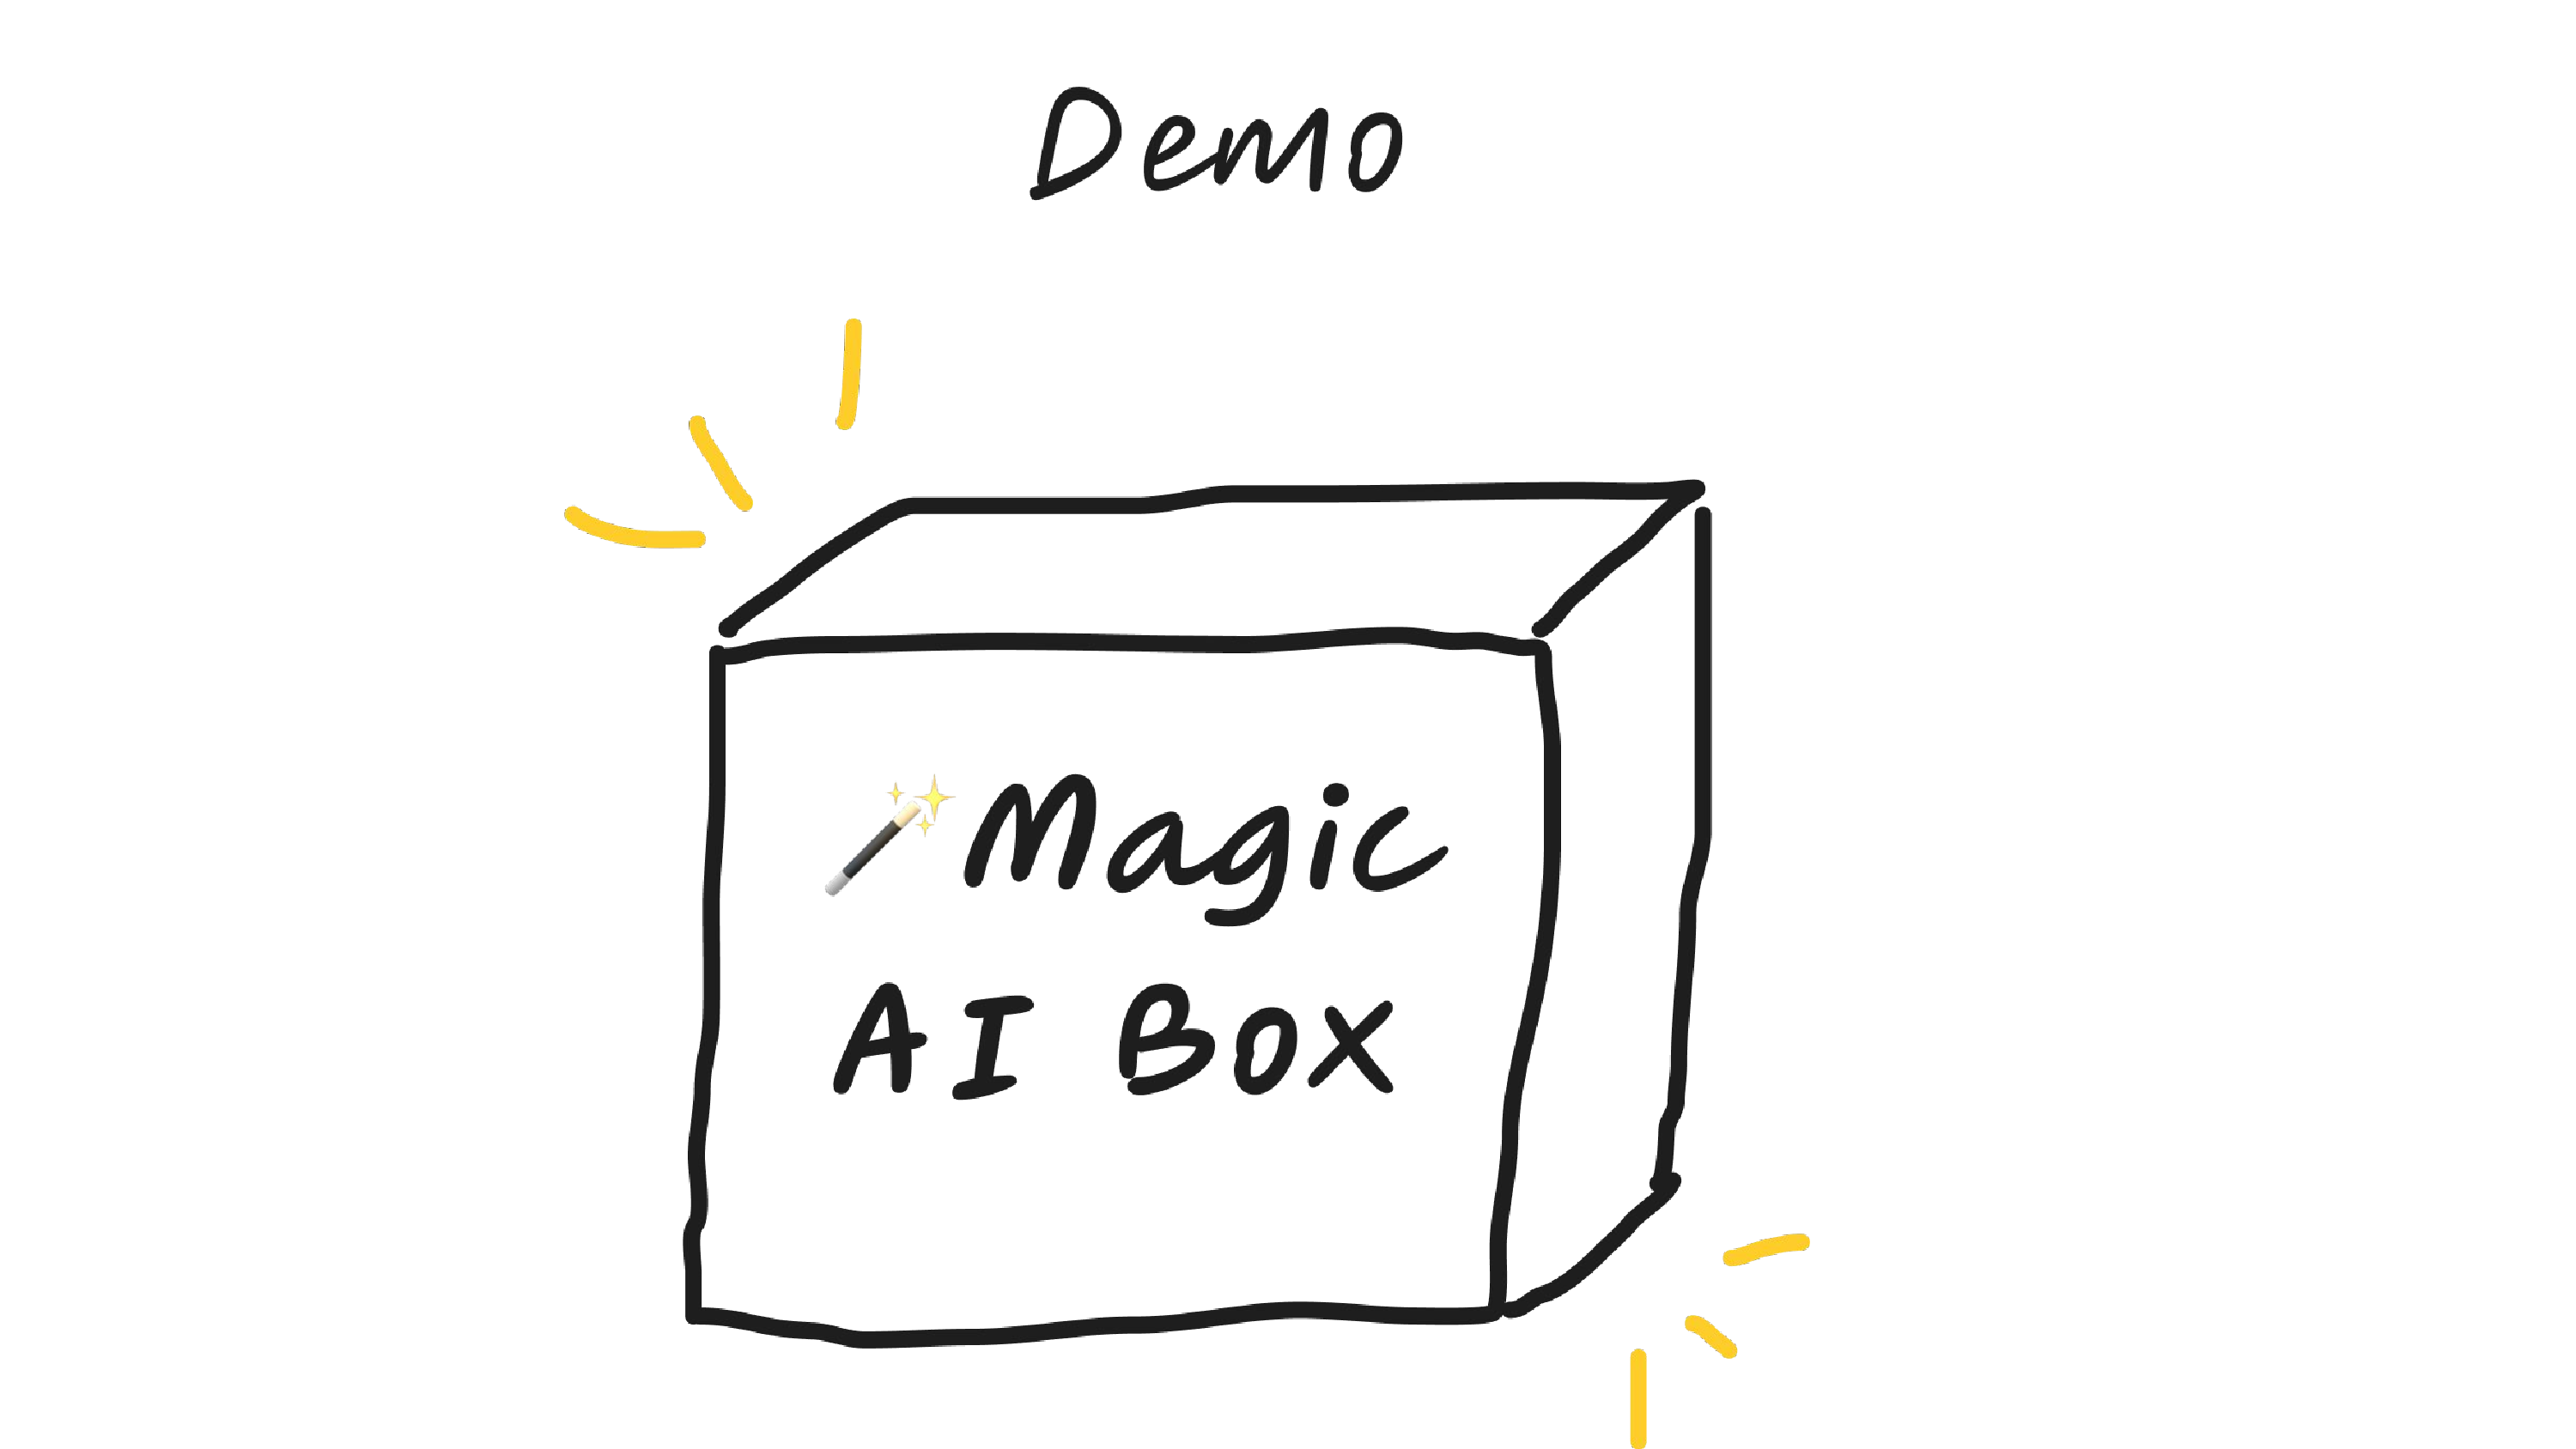 Demos Magic AI Box